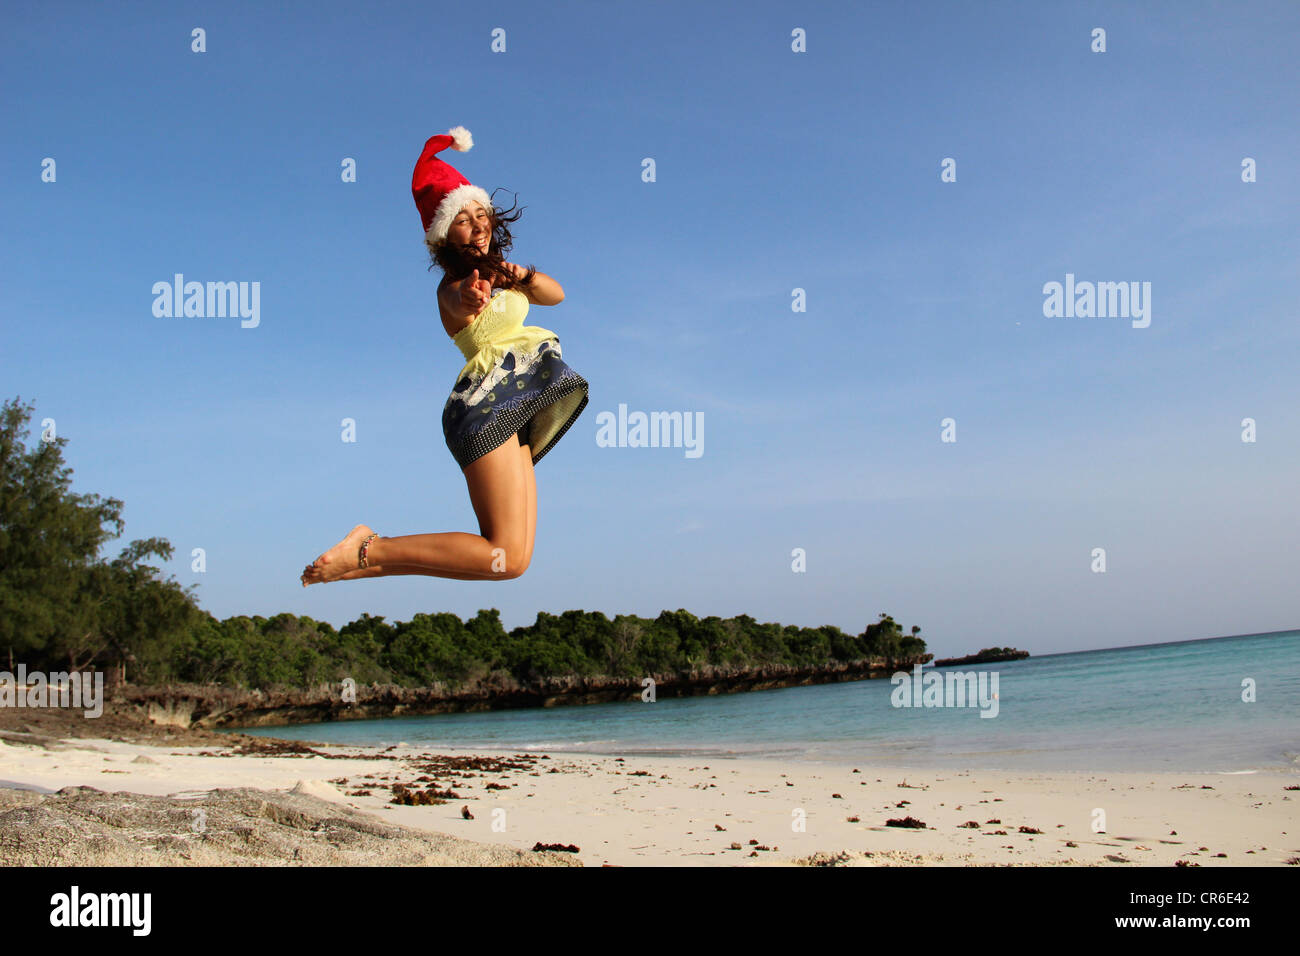 África, Tanzania, adolescente saltando en la playa Foto de stock